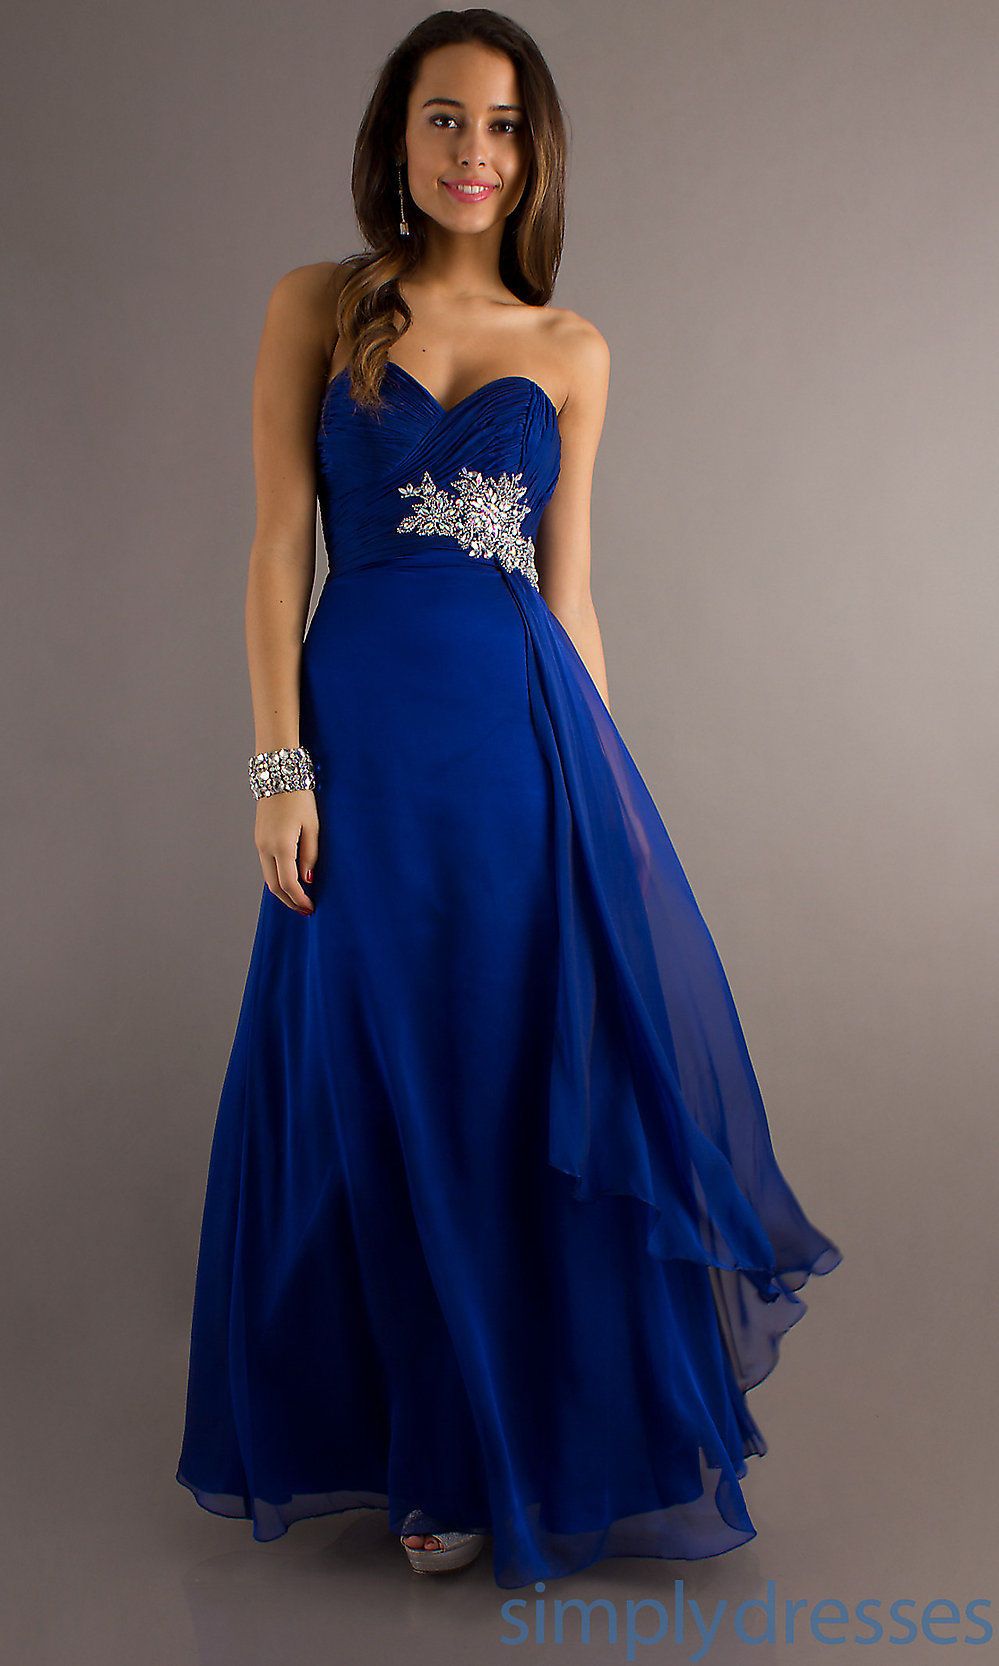 Bridesmaid Dresses Royal Blue And Silver 1 | Royal blue bridesmaid